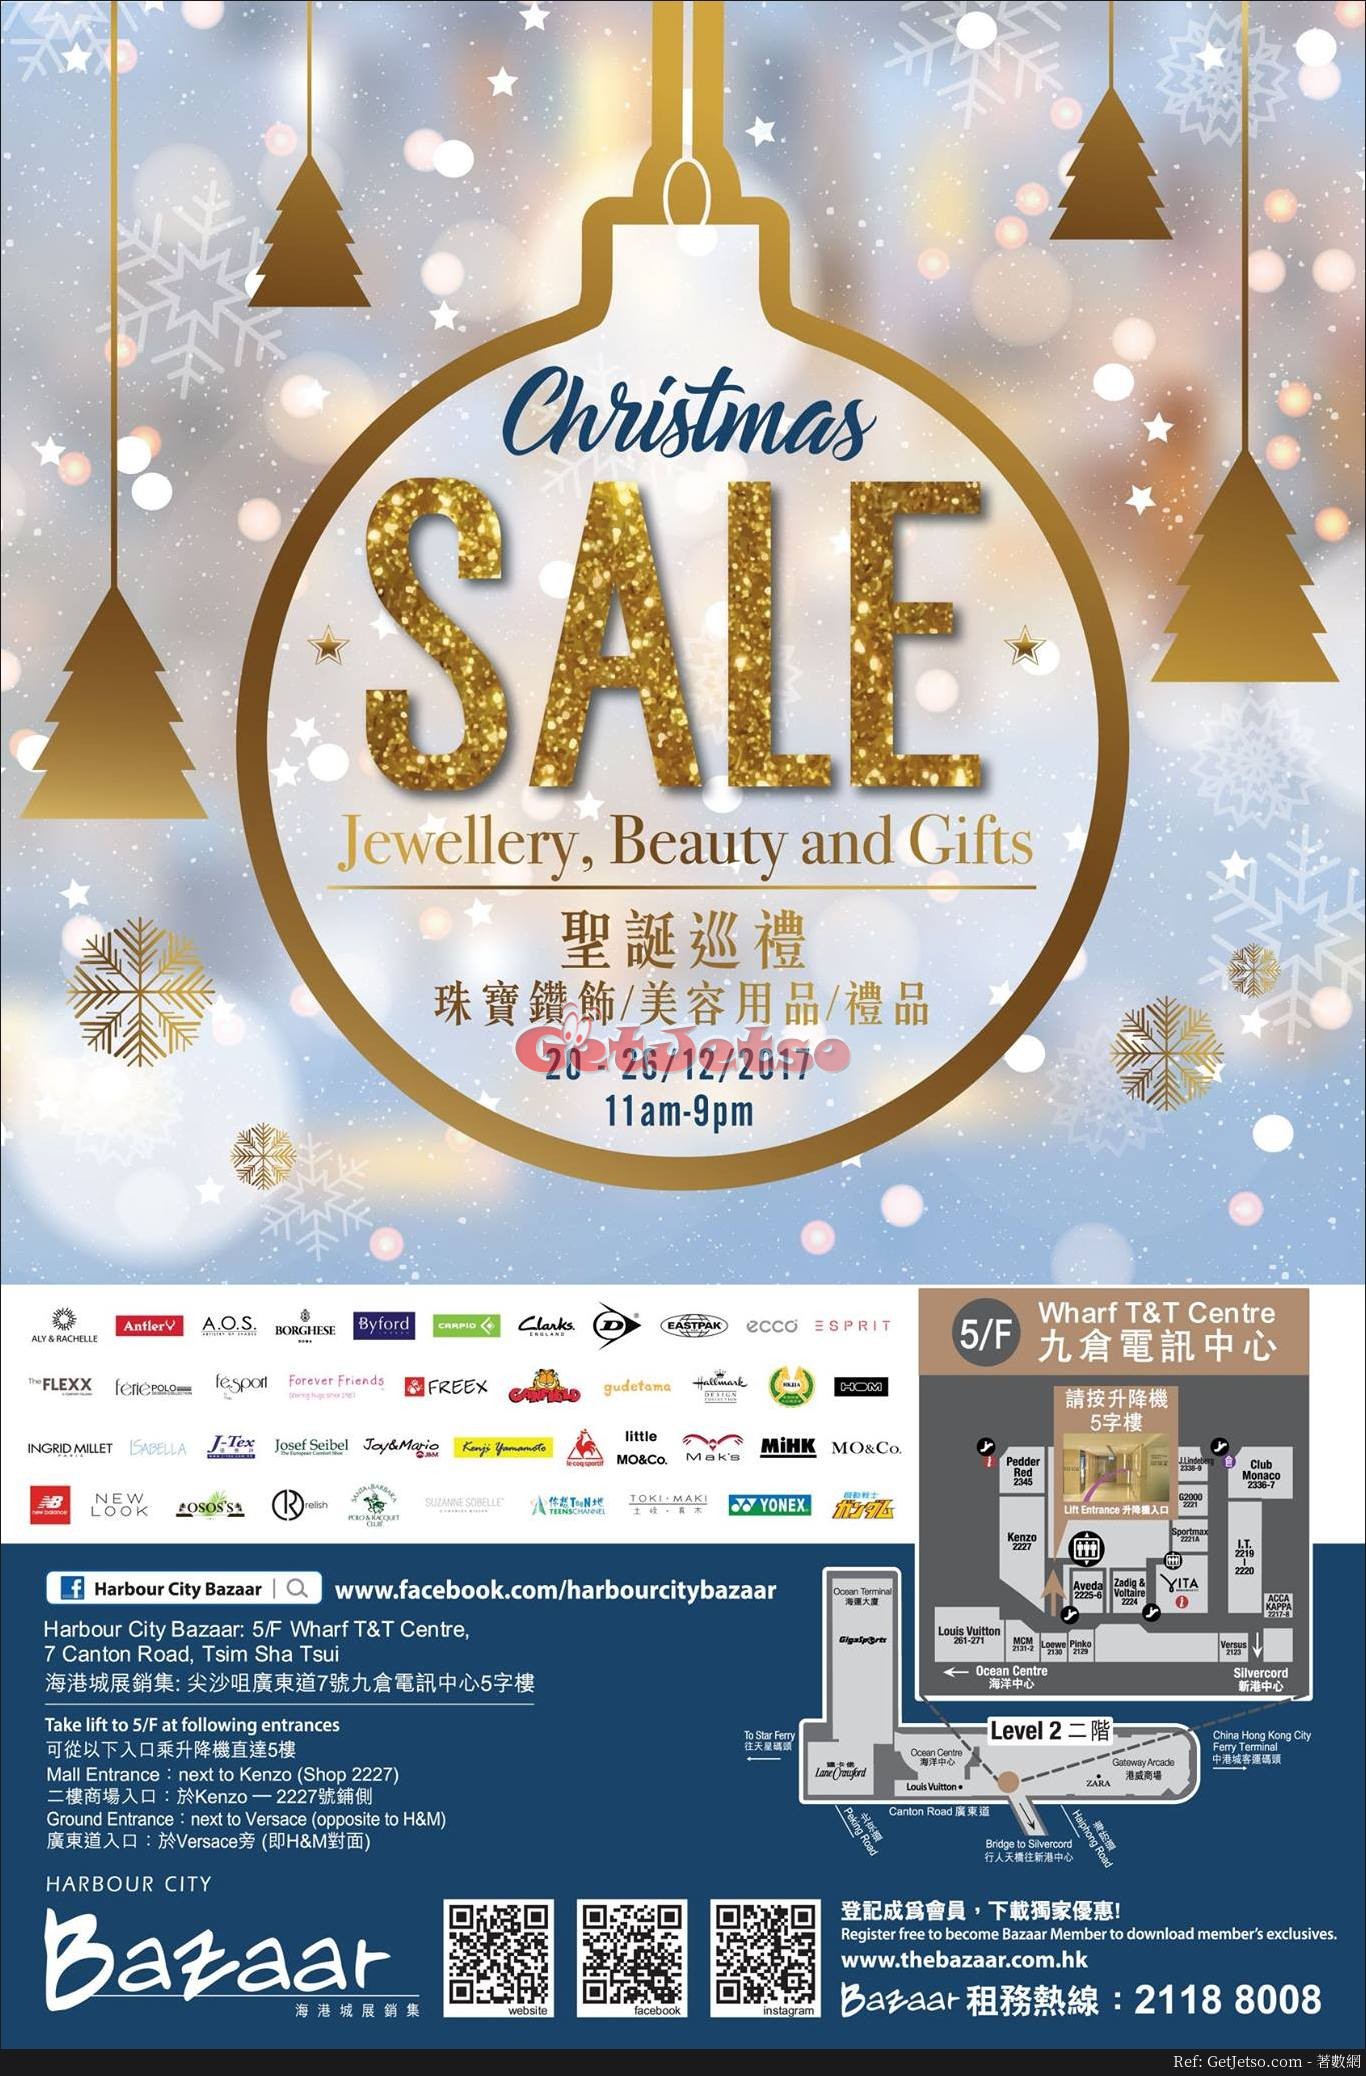 珠寶鑽飾、美容用品、聖誕禮品購物優惠(17年12月20-26日)圖片1